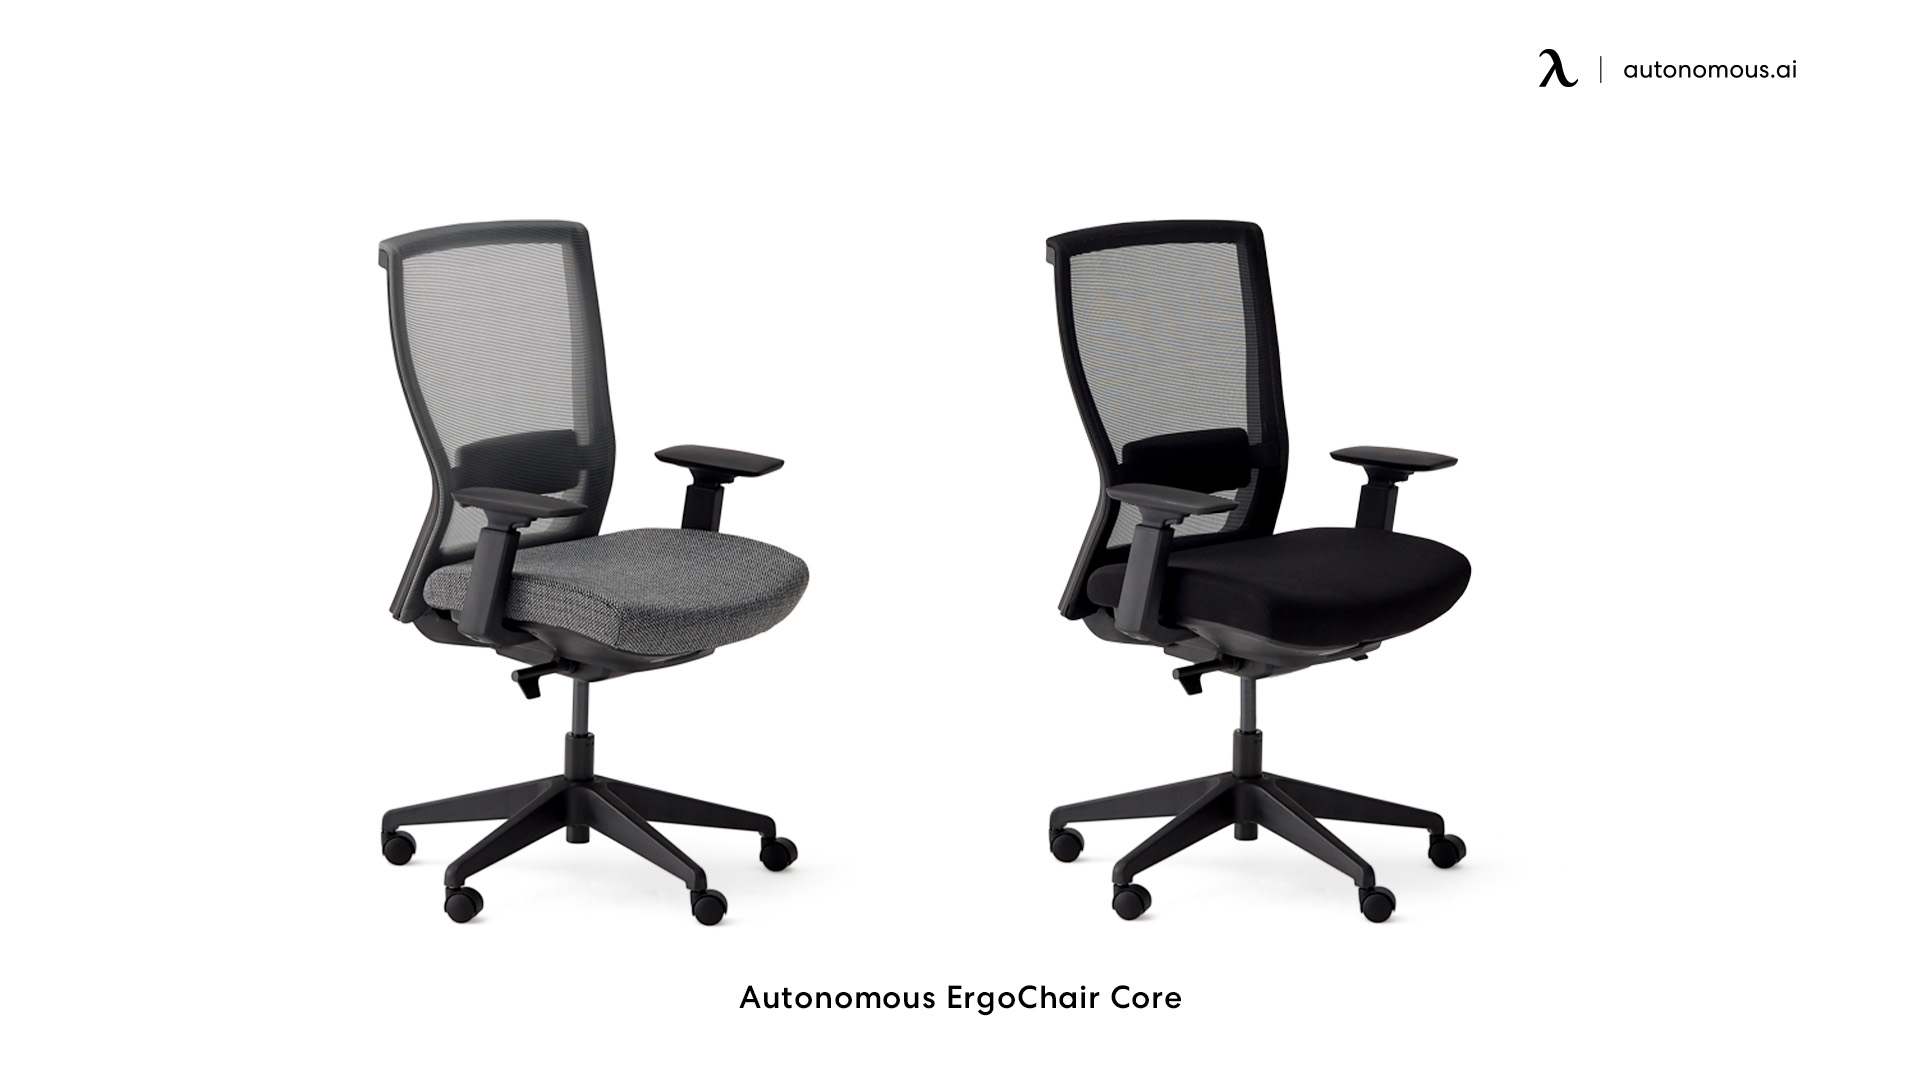 ErgoChair Recline soft desk chair